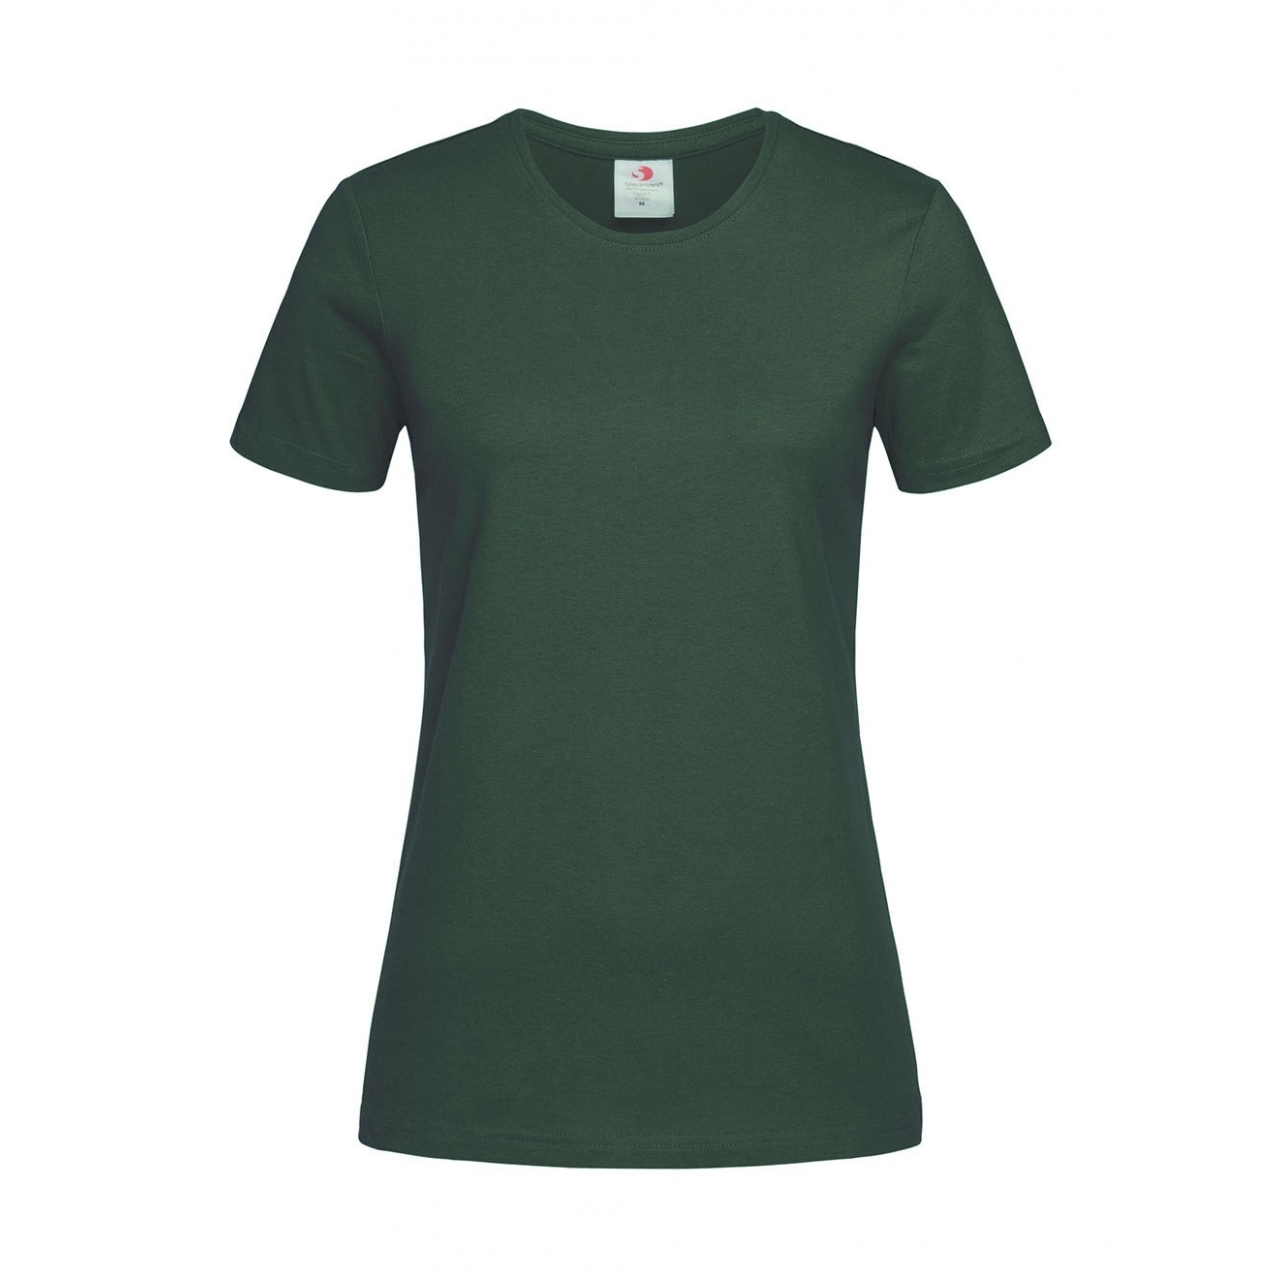 Tričko dámské Stedman Fitted s kulatým výstřihem - tmavě zelené, XXL